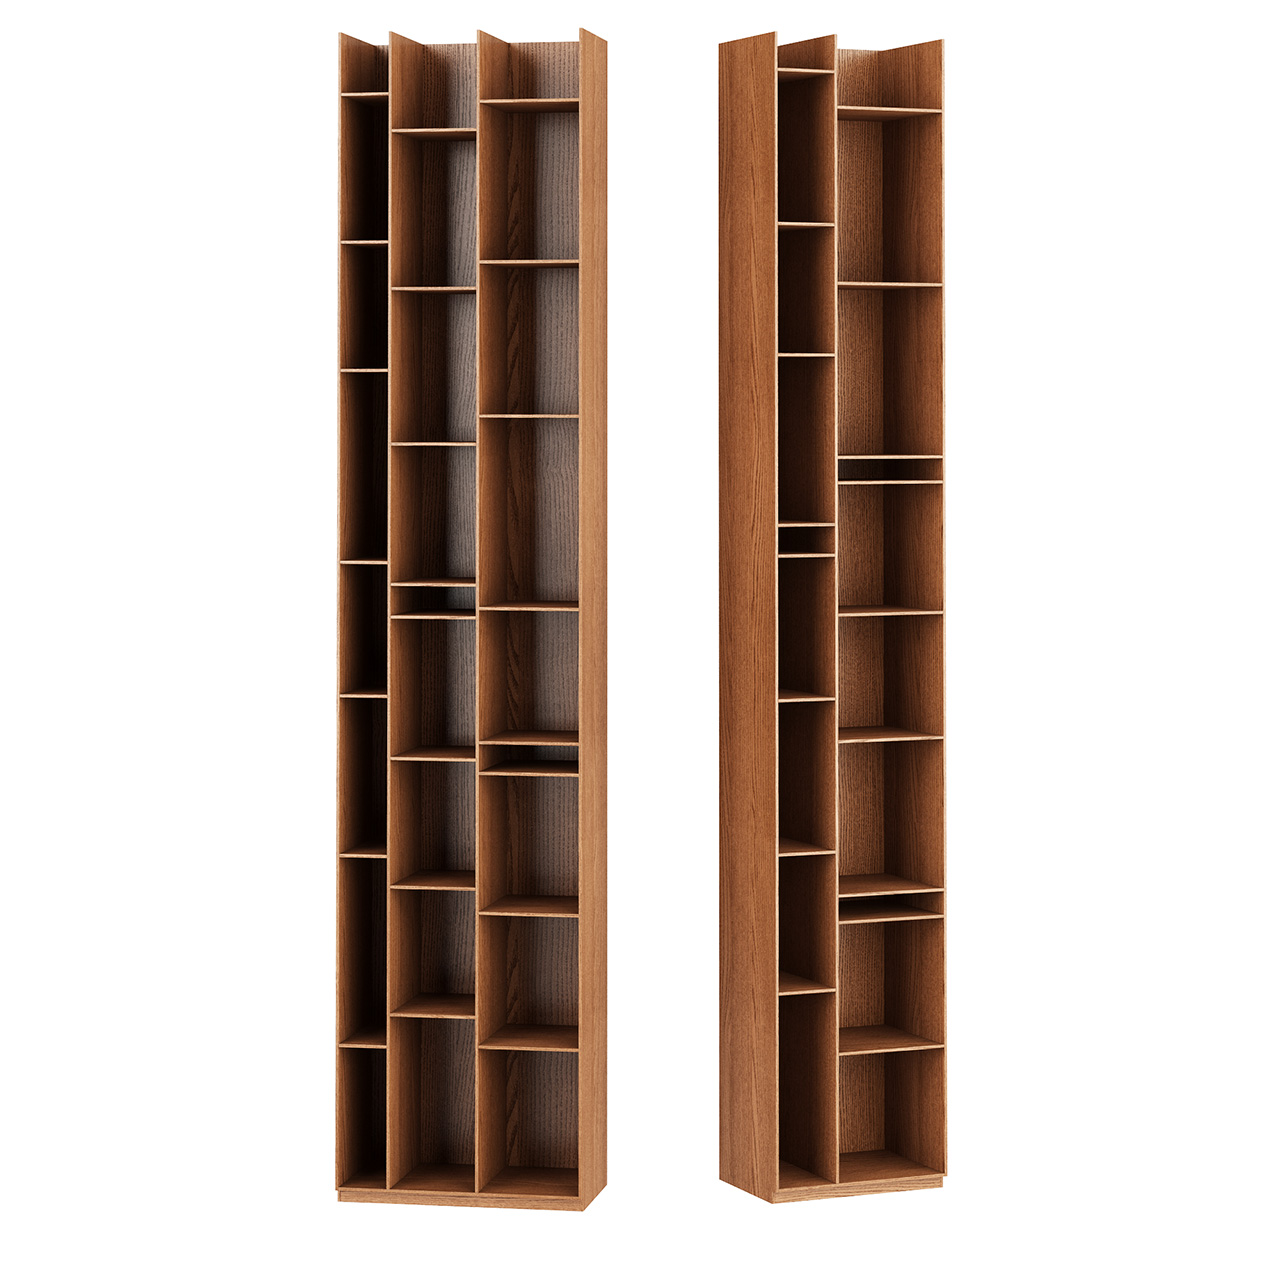 random-wood-bookcase-by-mdf-italia.jpg